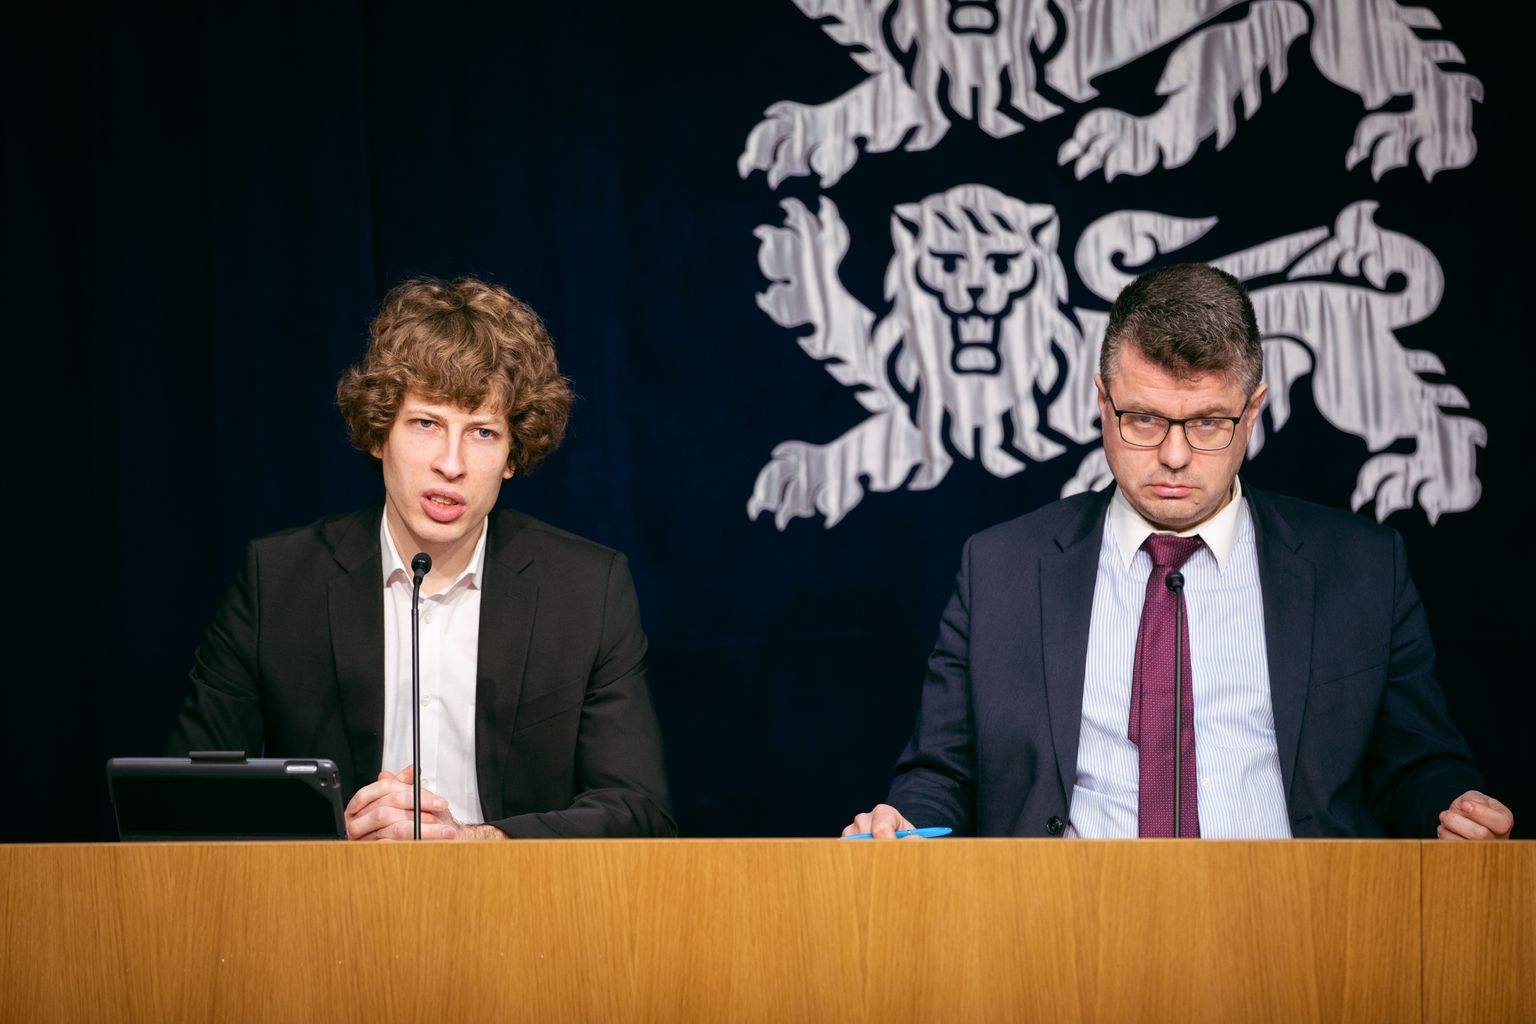 Riigikogu riigieelarve kontrolli erikomisjoni esimees Urmas Reinsalu kutsus istungile tervise- ja tööminister Tanel Kiige.